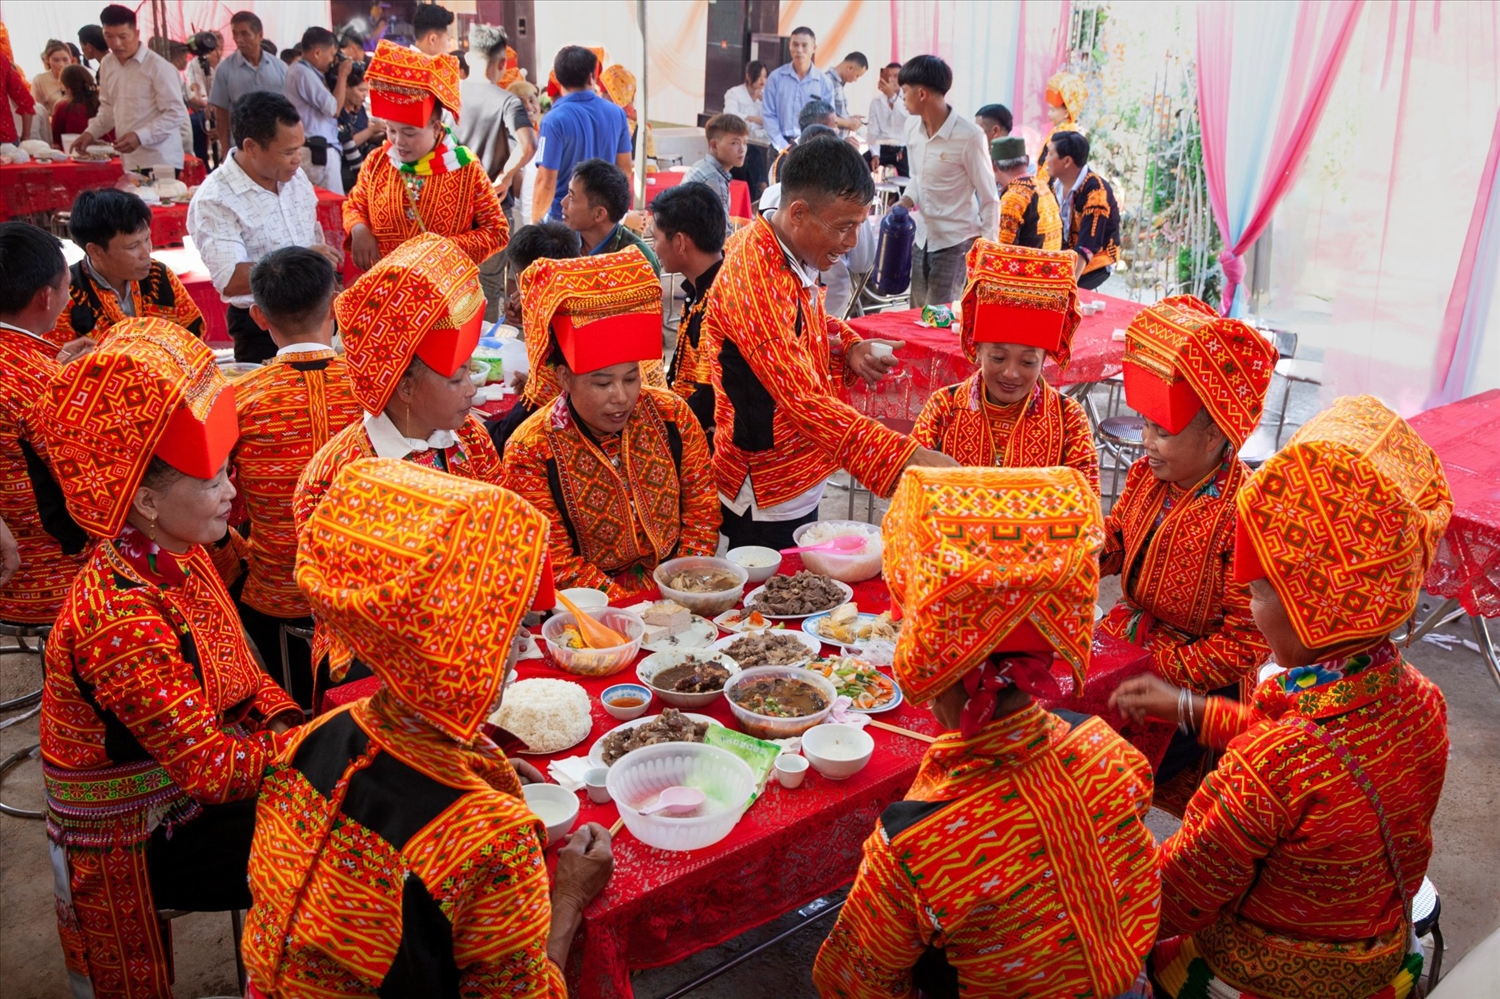 Trang phục truyền thống được người Dao Lô Găng mặc trong sinh hoạt đời thường cũng như các dịp lễ